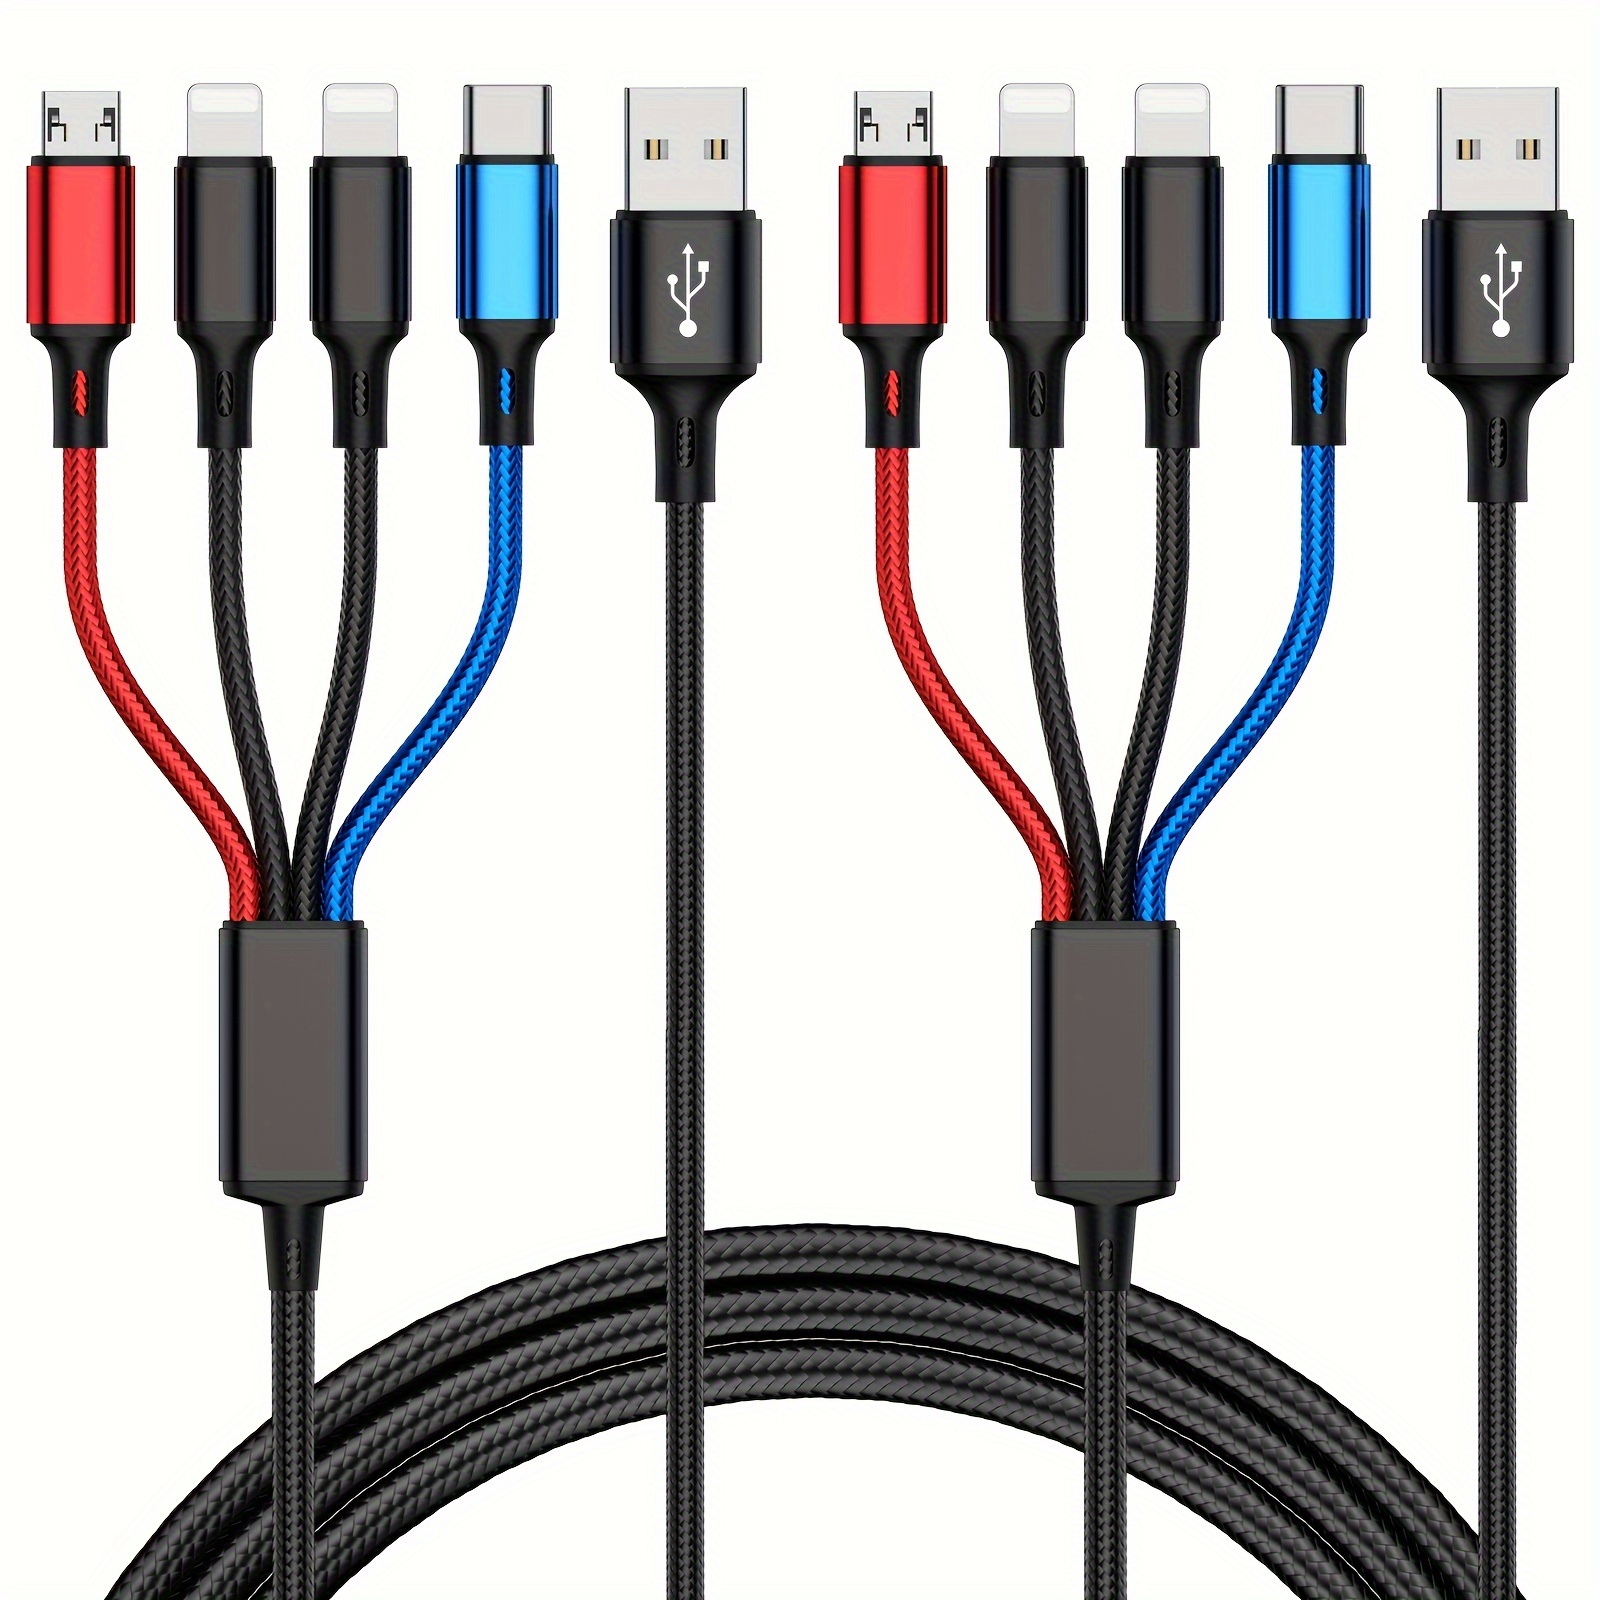 Cable Cargador Múltiple USB 4ft Largo Cable Carga Teléfono 3en1 paquete de 3